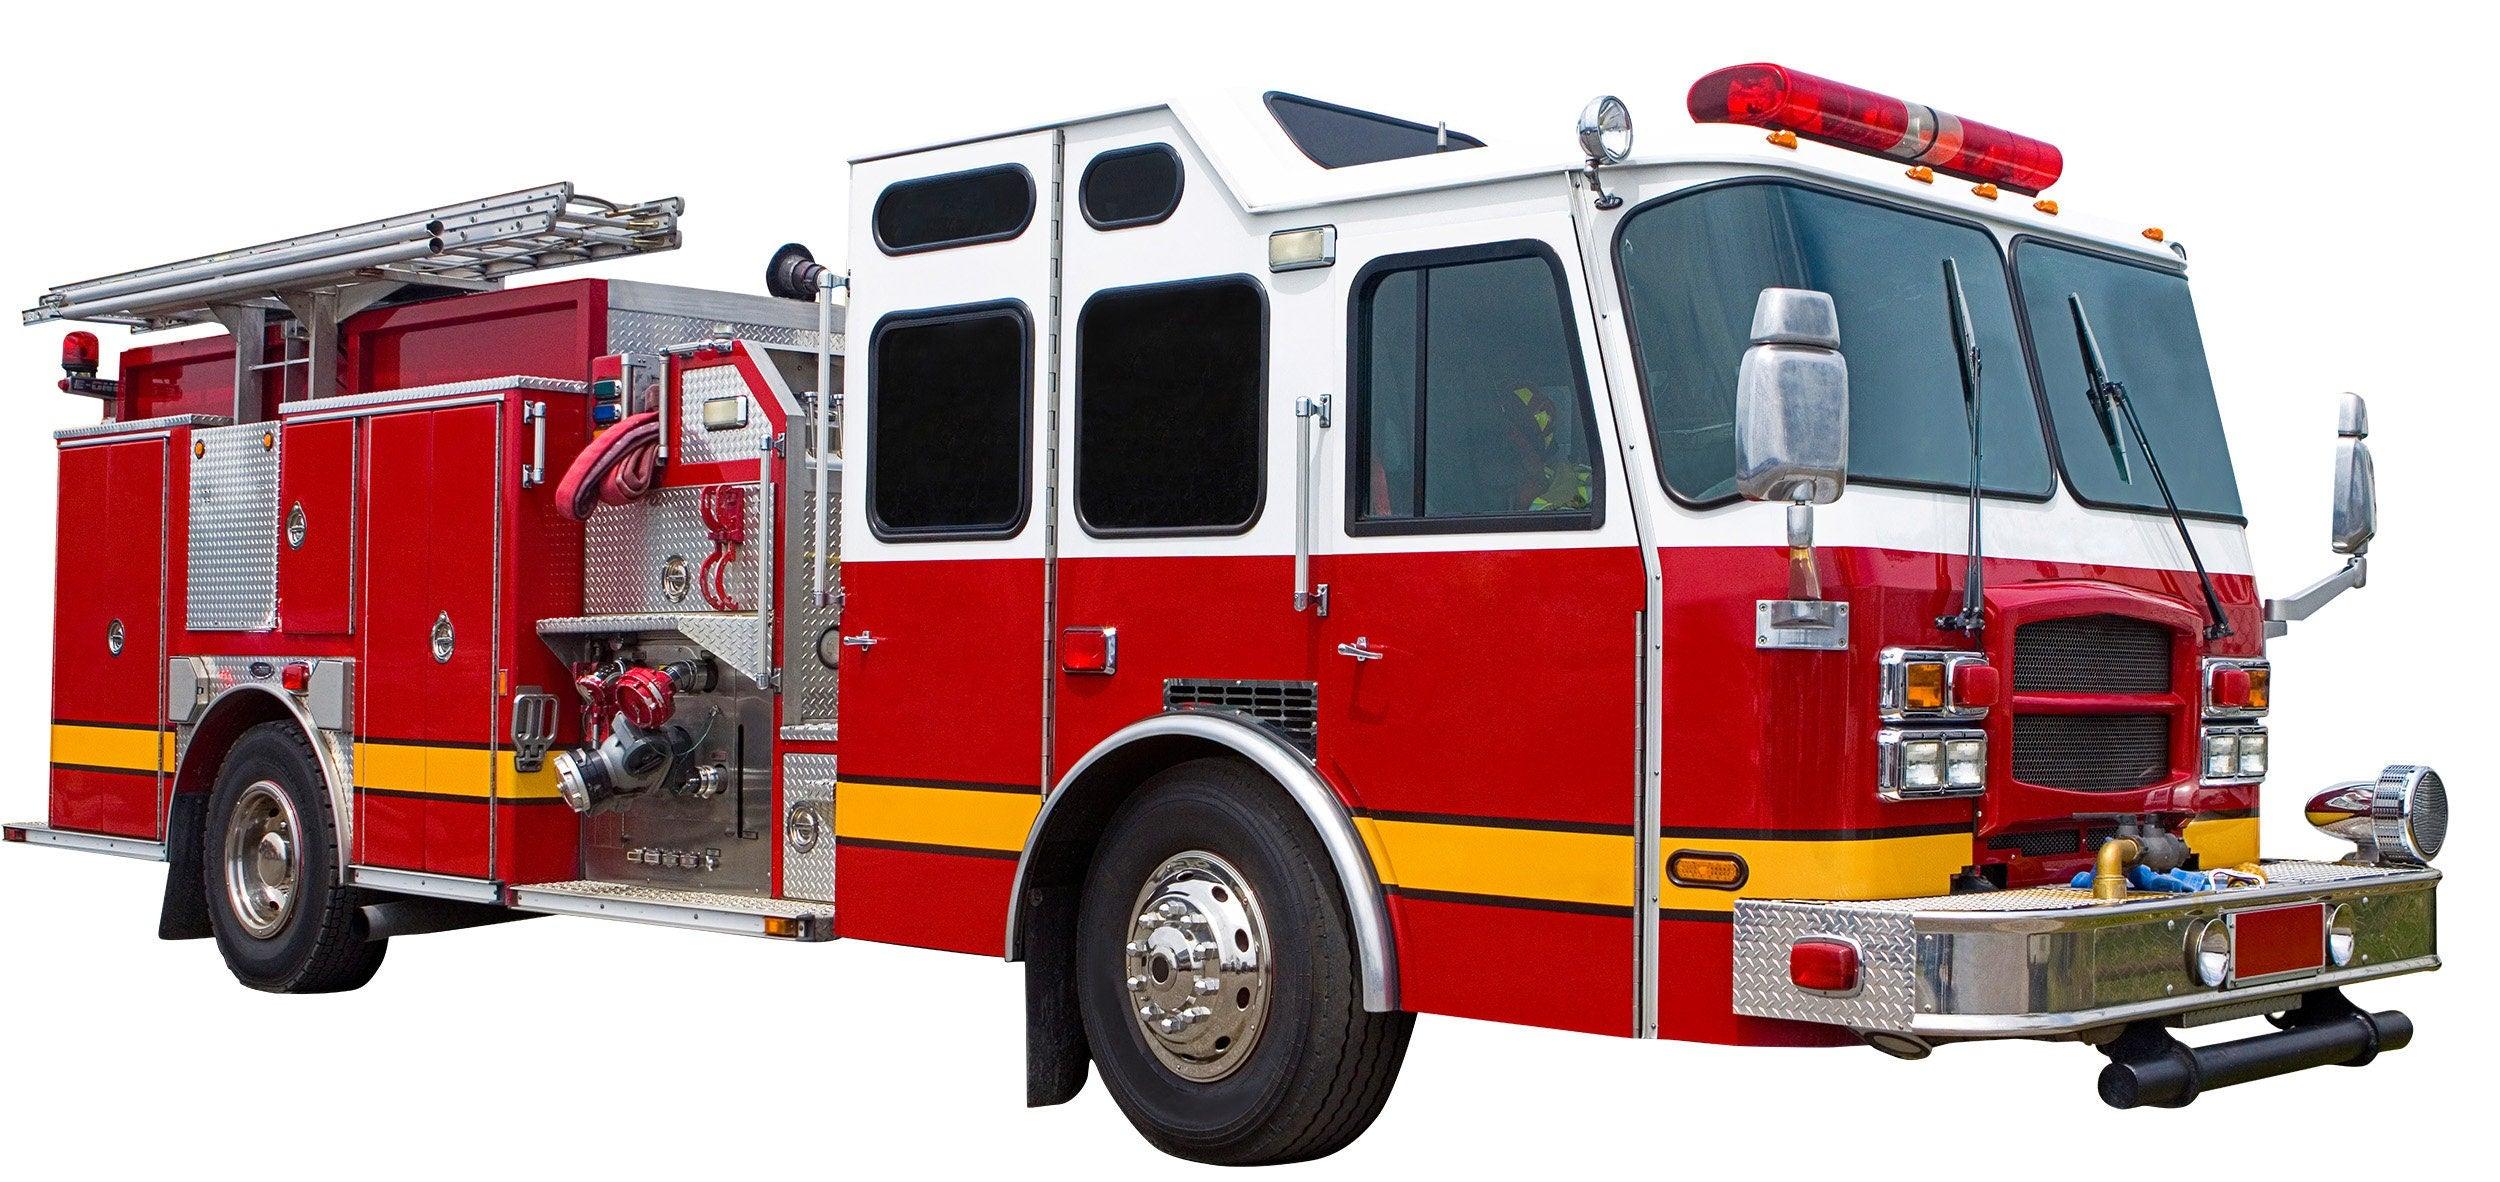 Fire Truck, Fire Engine, Wall Decal Sticker